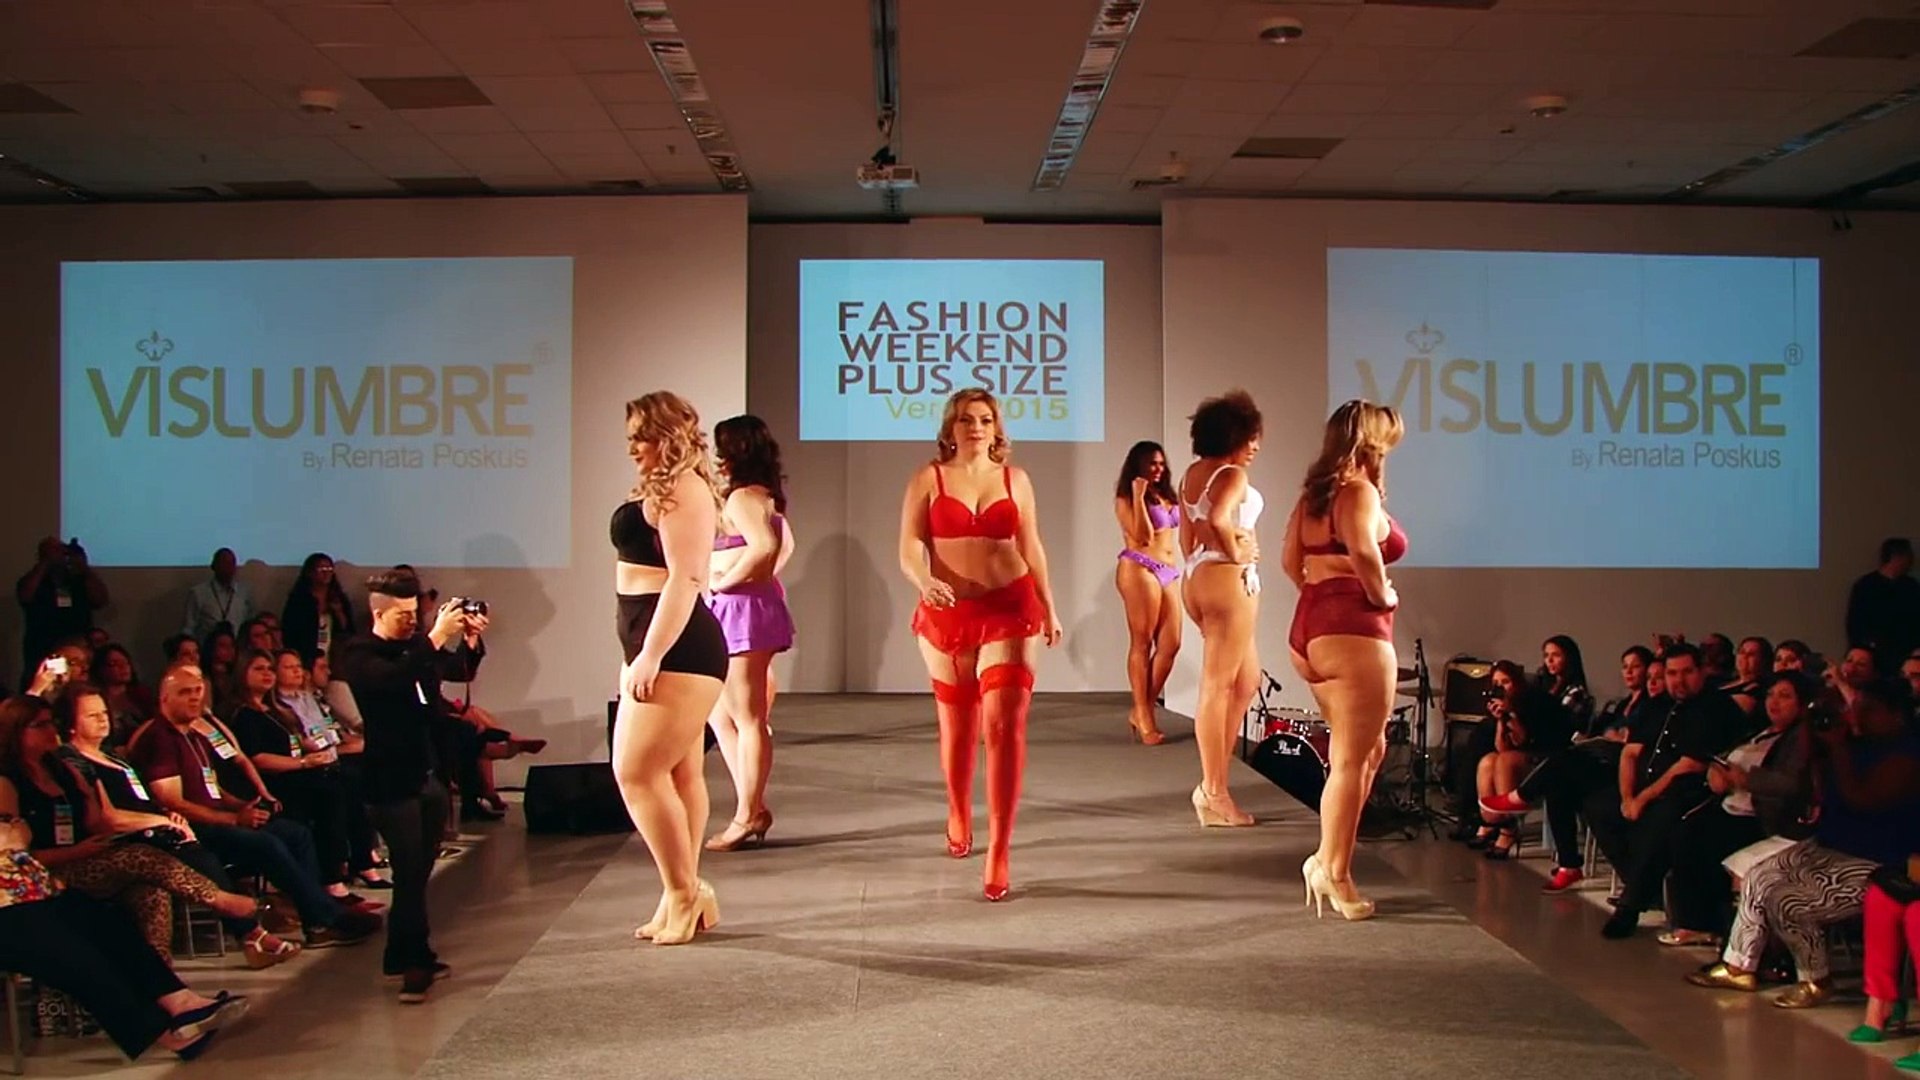 VISLUMBRE - Desfile para 10ª Edição do Fashion Weekend Plus Size Verão 2015  @FWPS - video Dailymotion